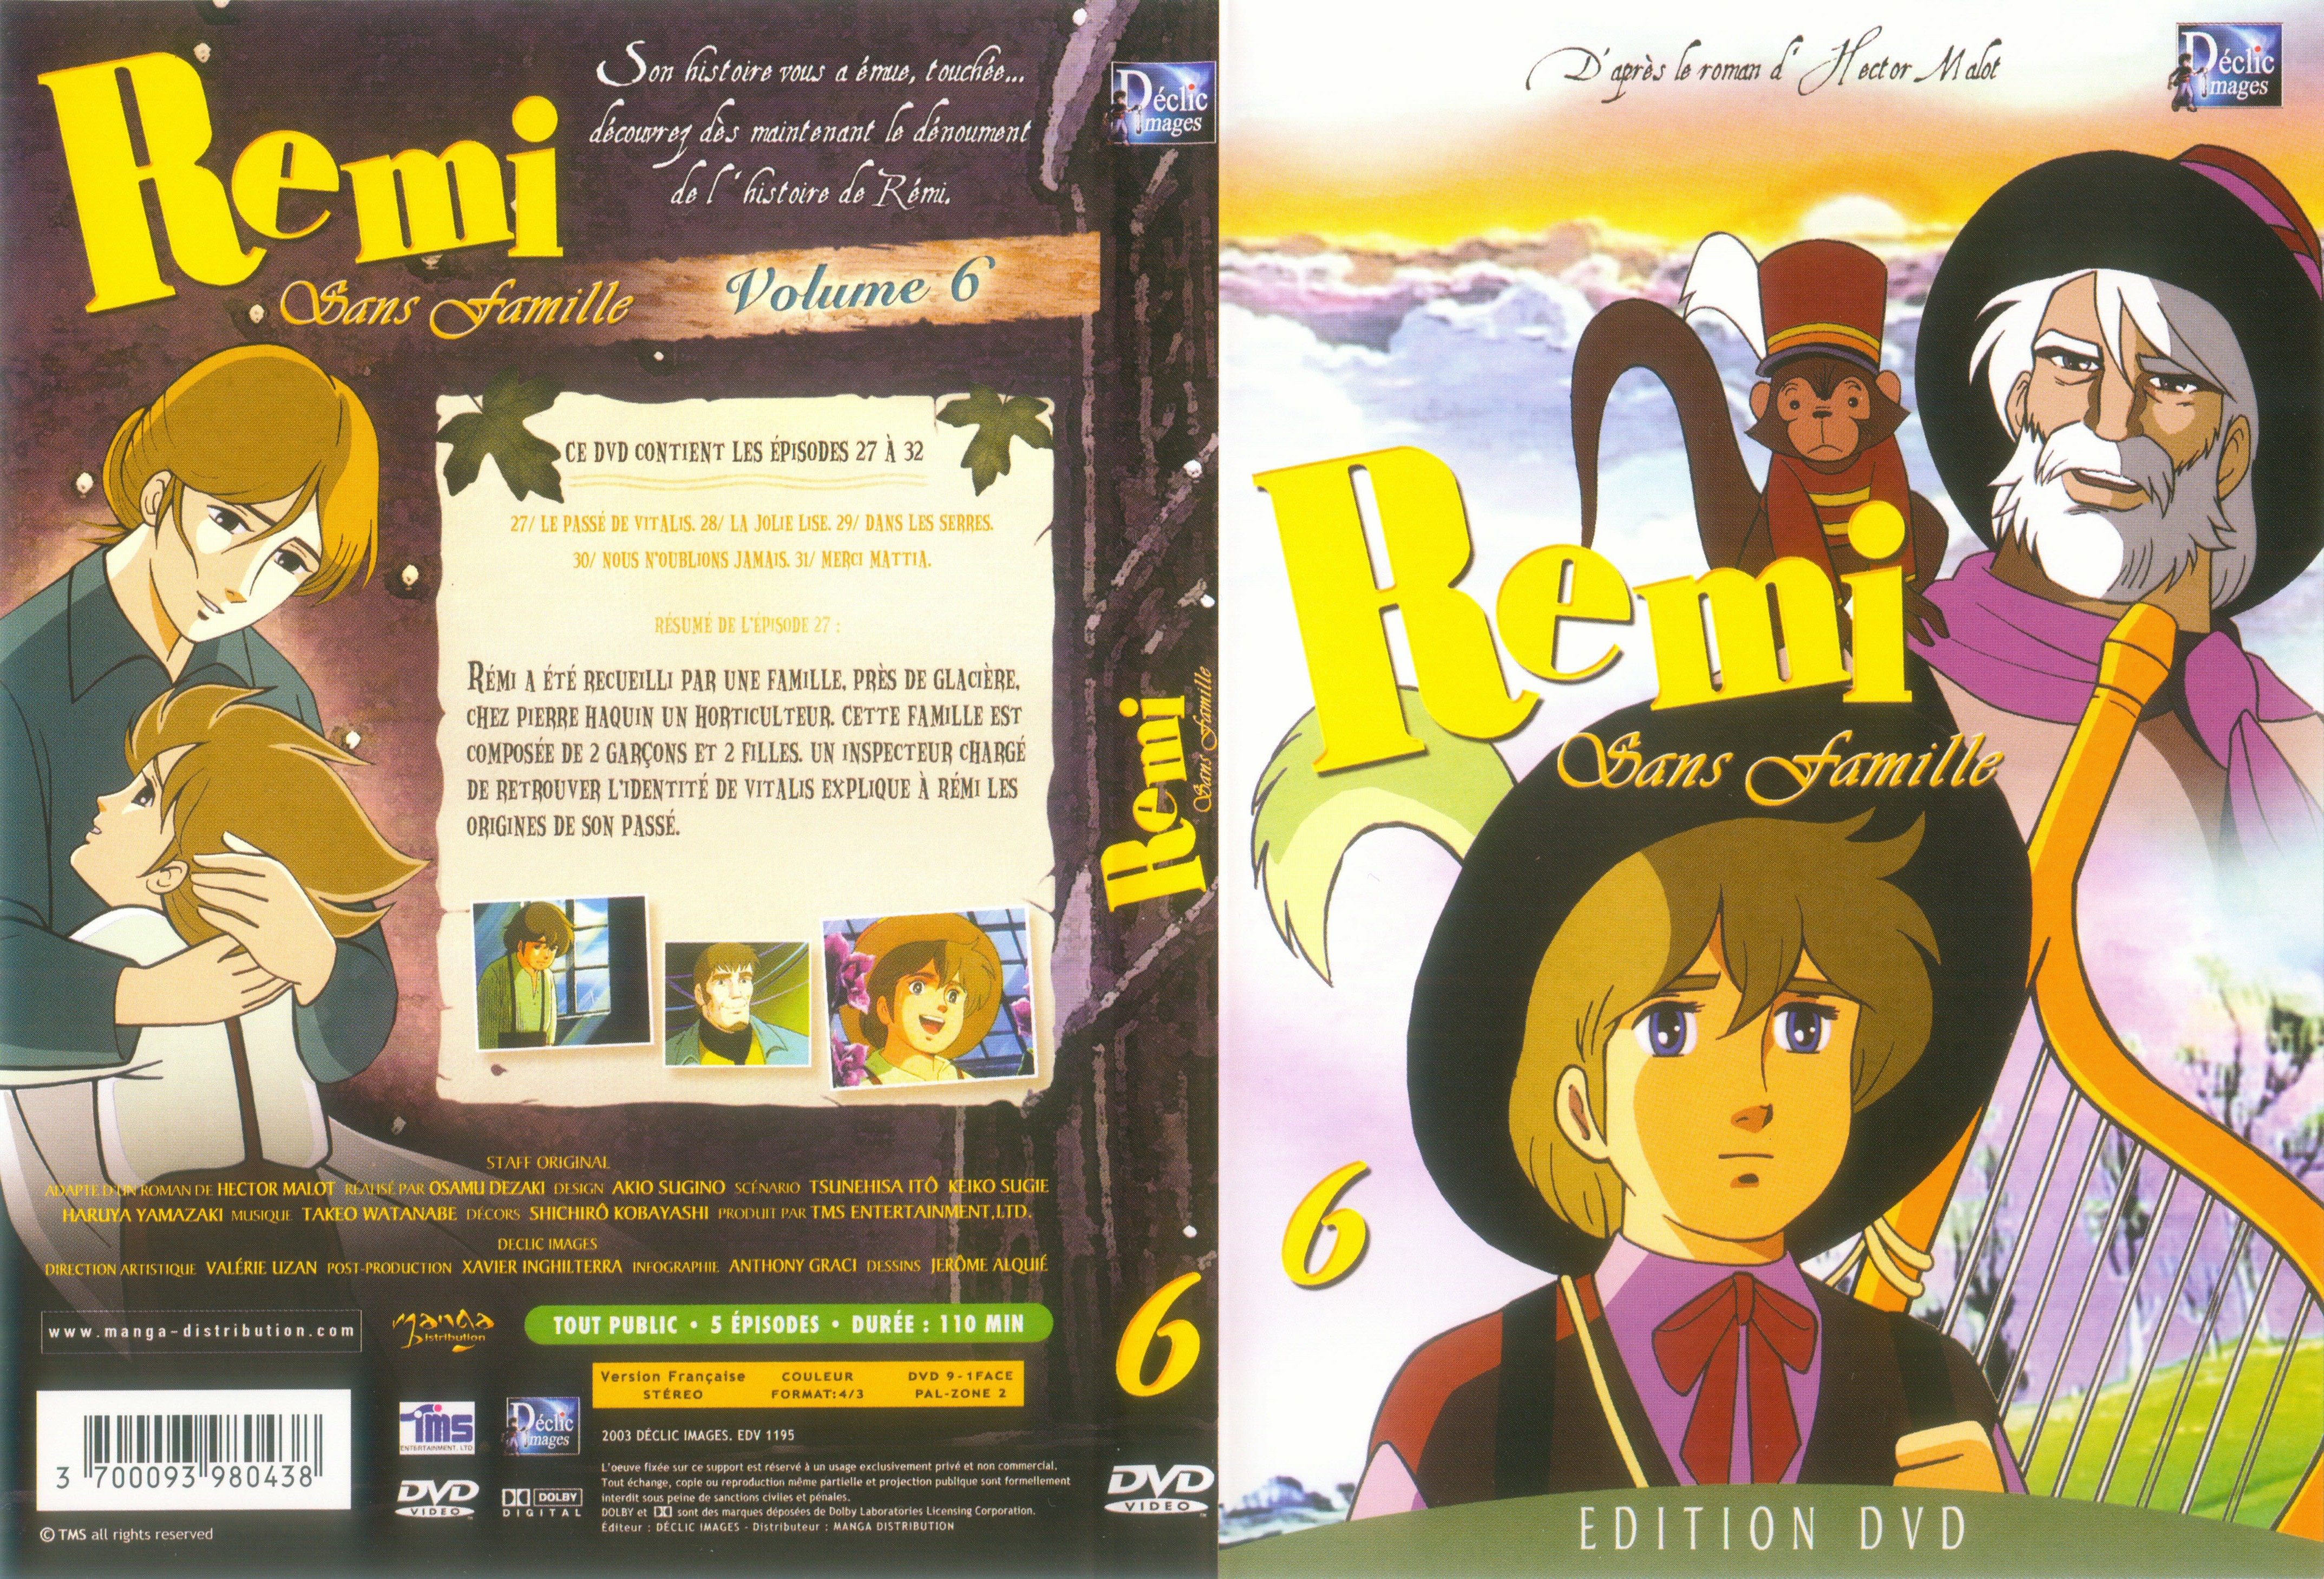 Jaquette DVD Remi sans famille vol 06